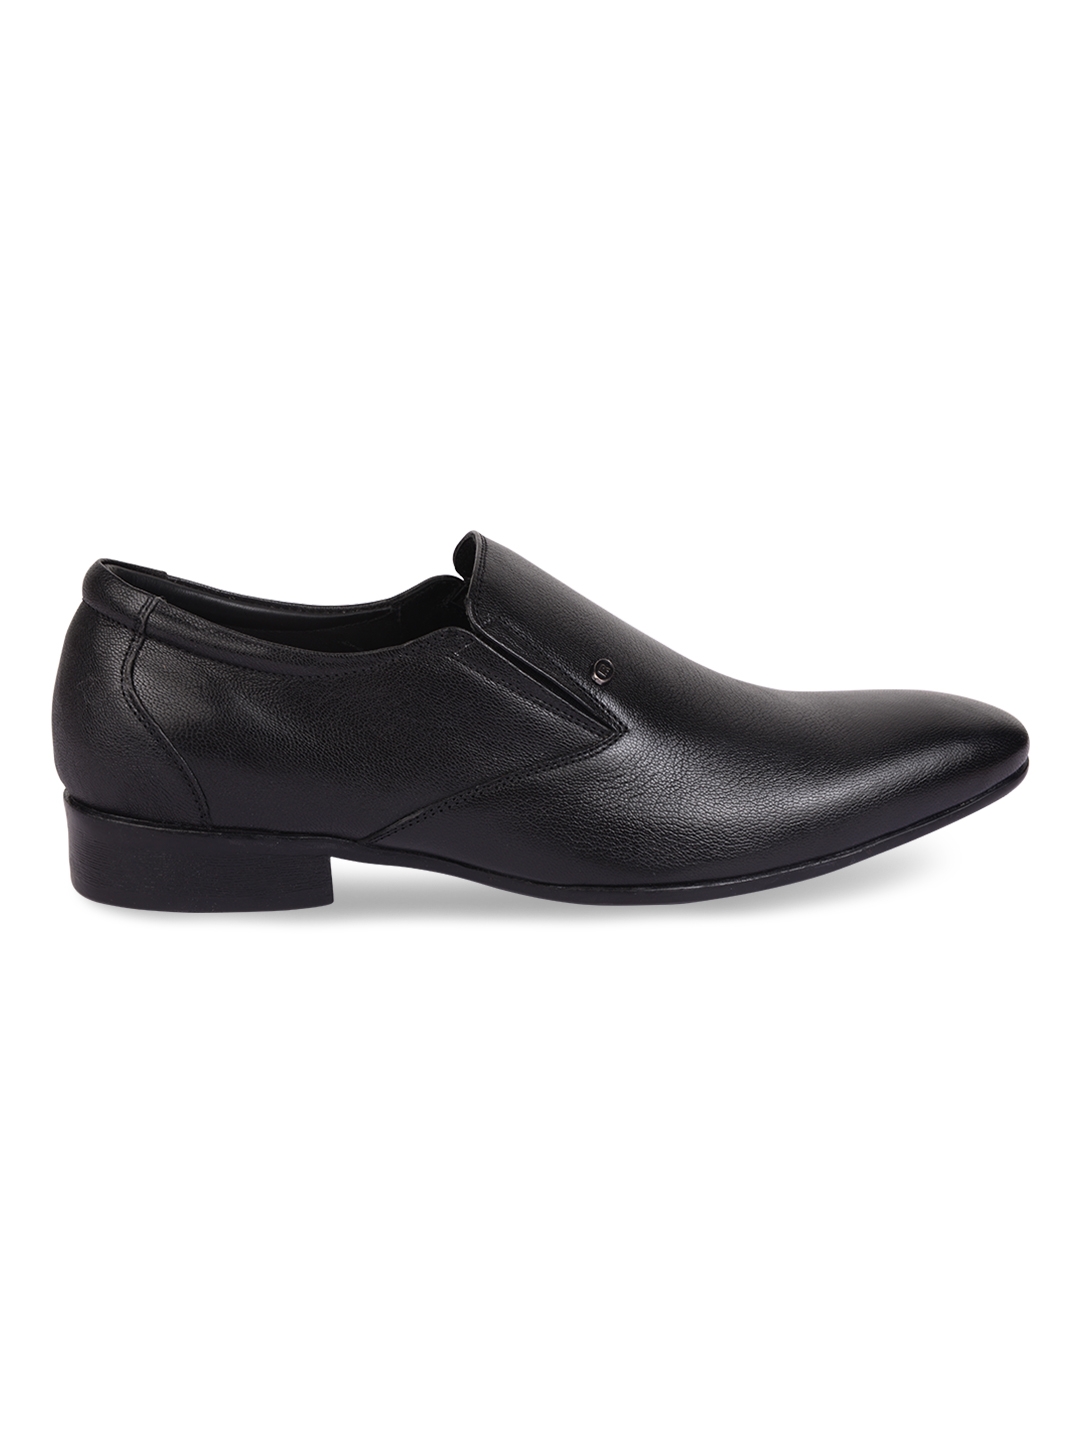 Regal | Men Solid Leather Formal Slip Ons